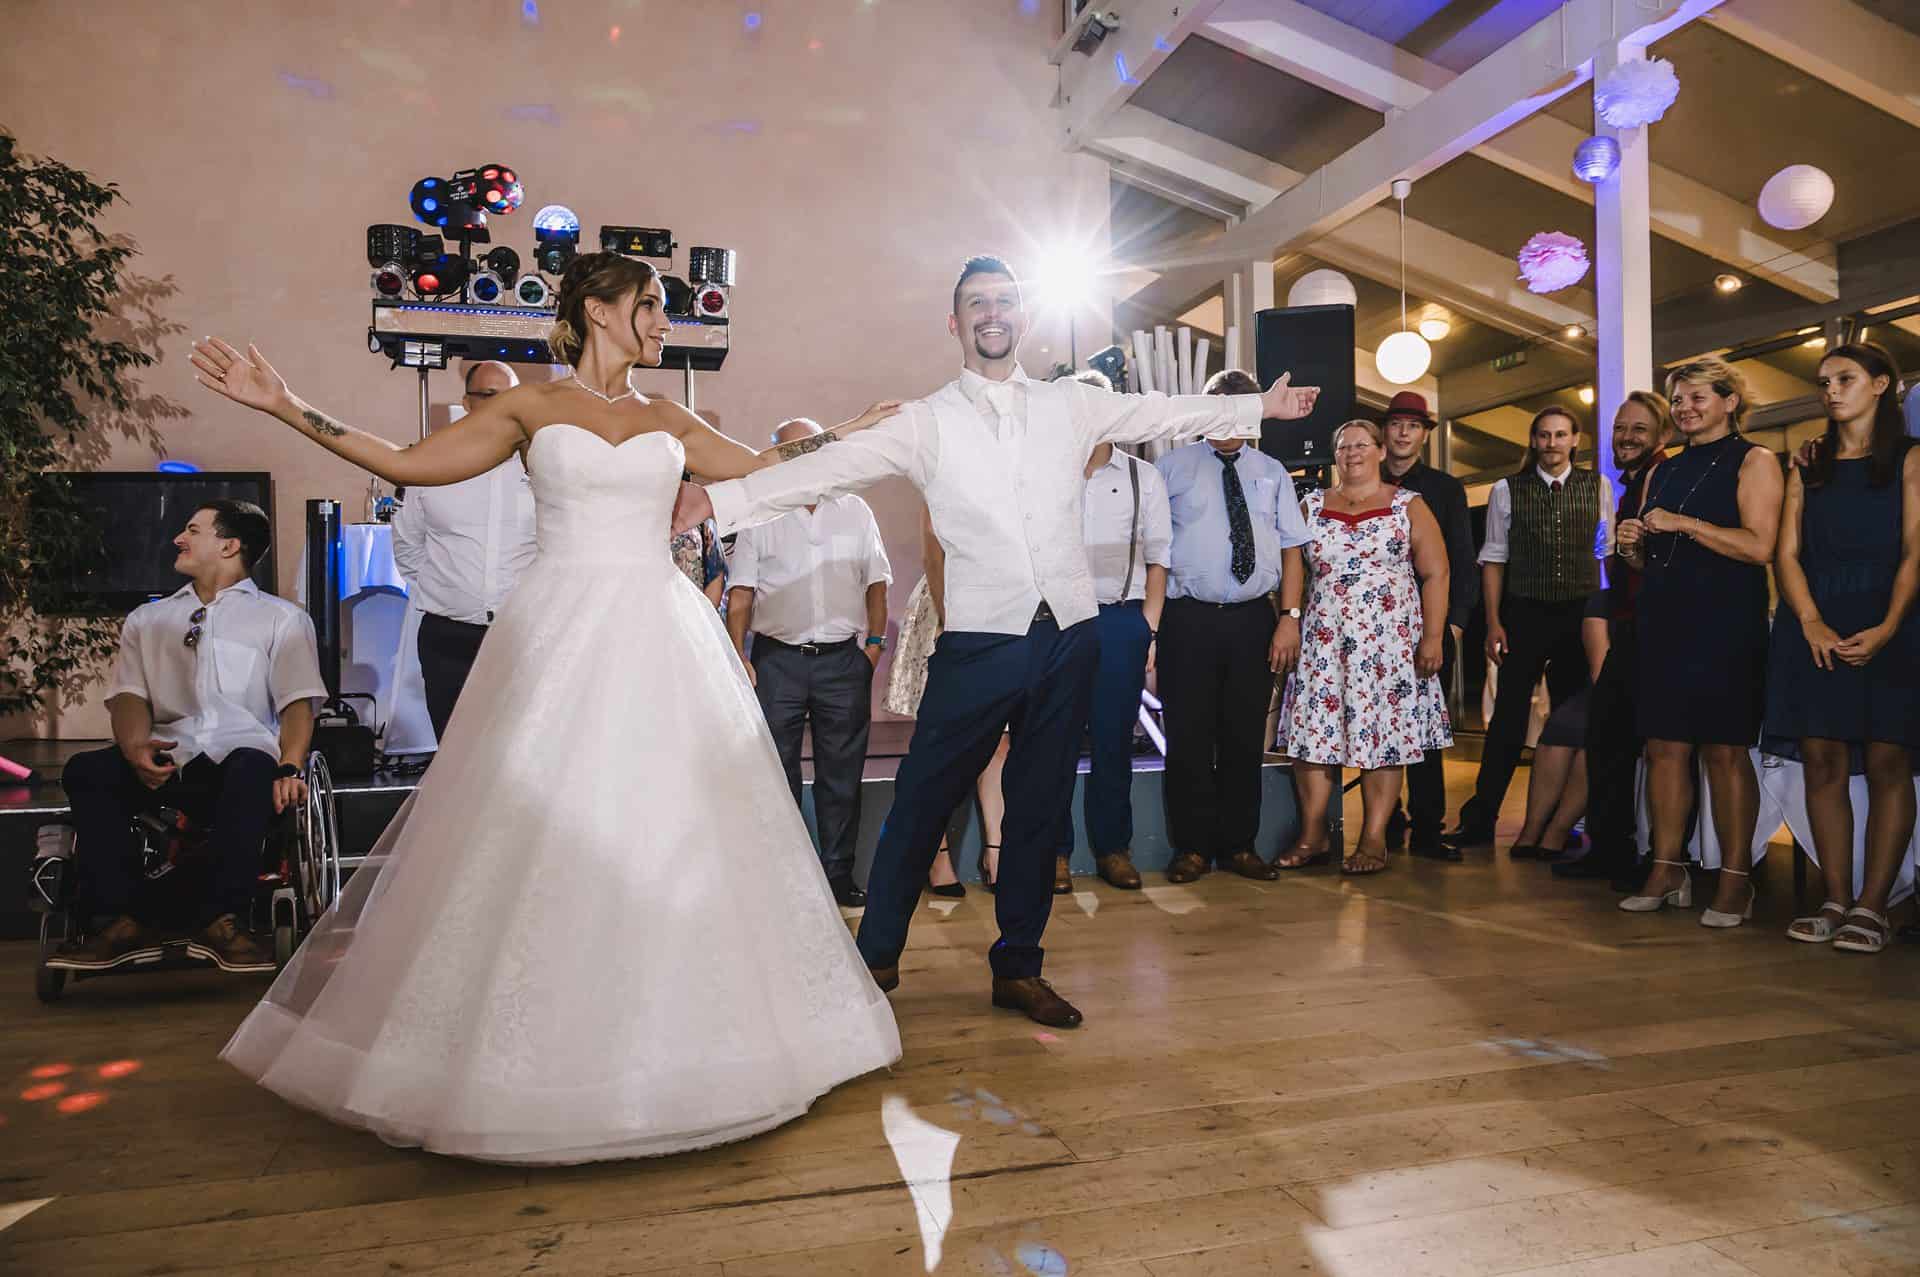 Eine Braut und ein Bräutigam tanzen bei ihrer Hochzeitsfeier.